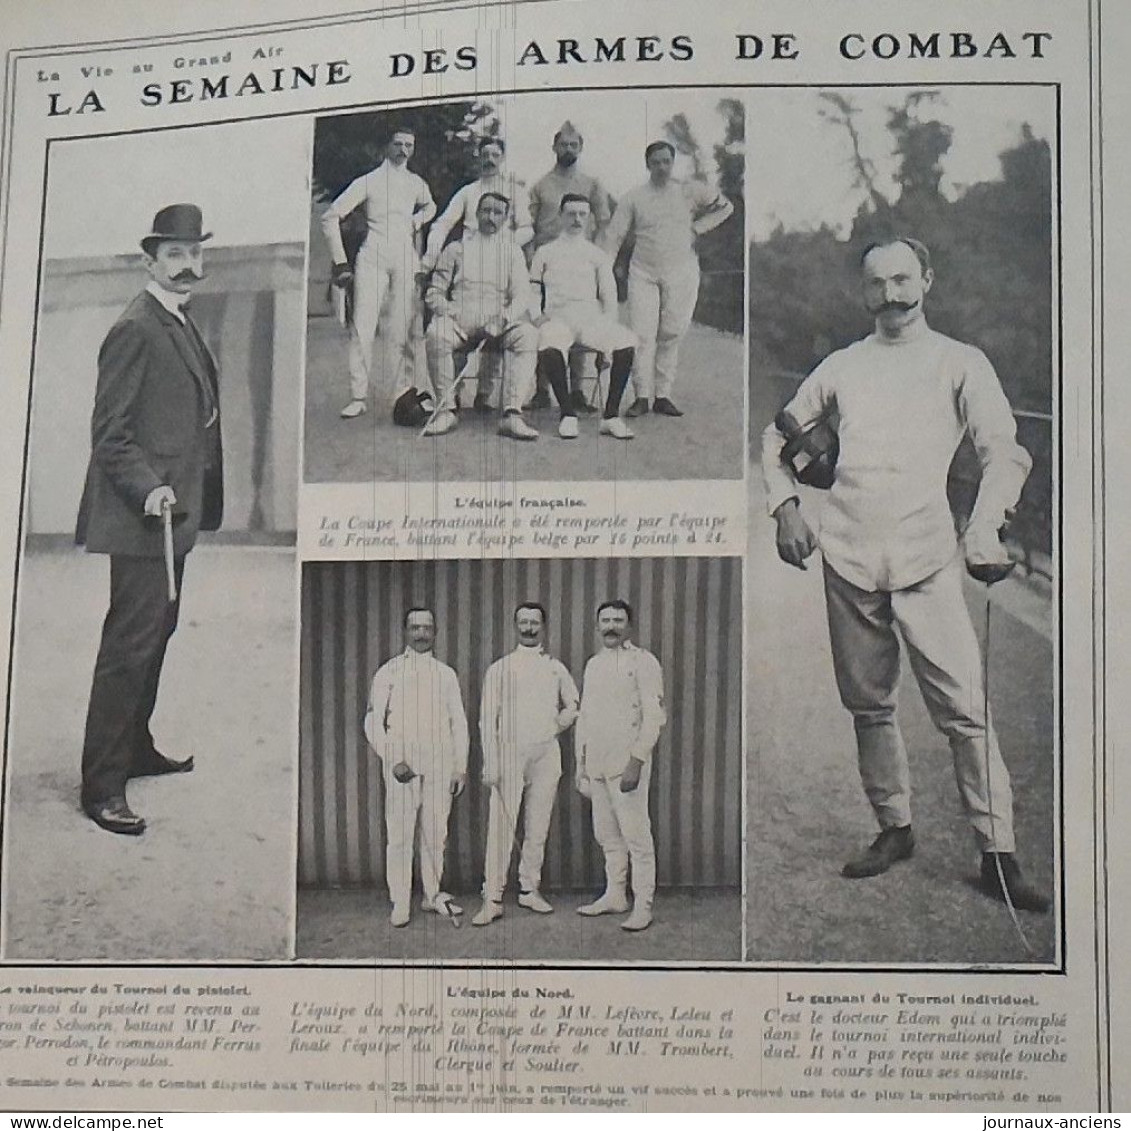 1907 LA SEMAINE DES ARMES DE COMBAT - DISPUTÉE AUX TUILLERIES - BARON DE SCHONEN - Dorteur EDOM - EQUIPE DU NORD - Sports De Combat